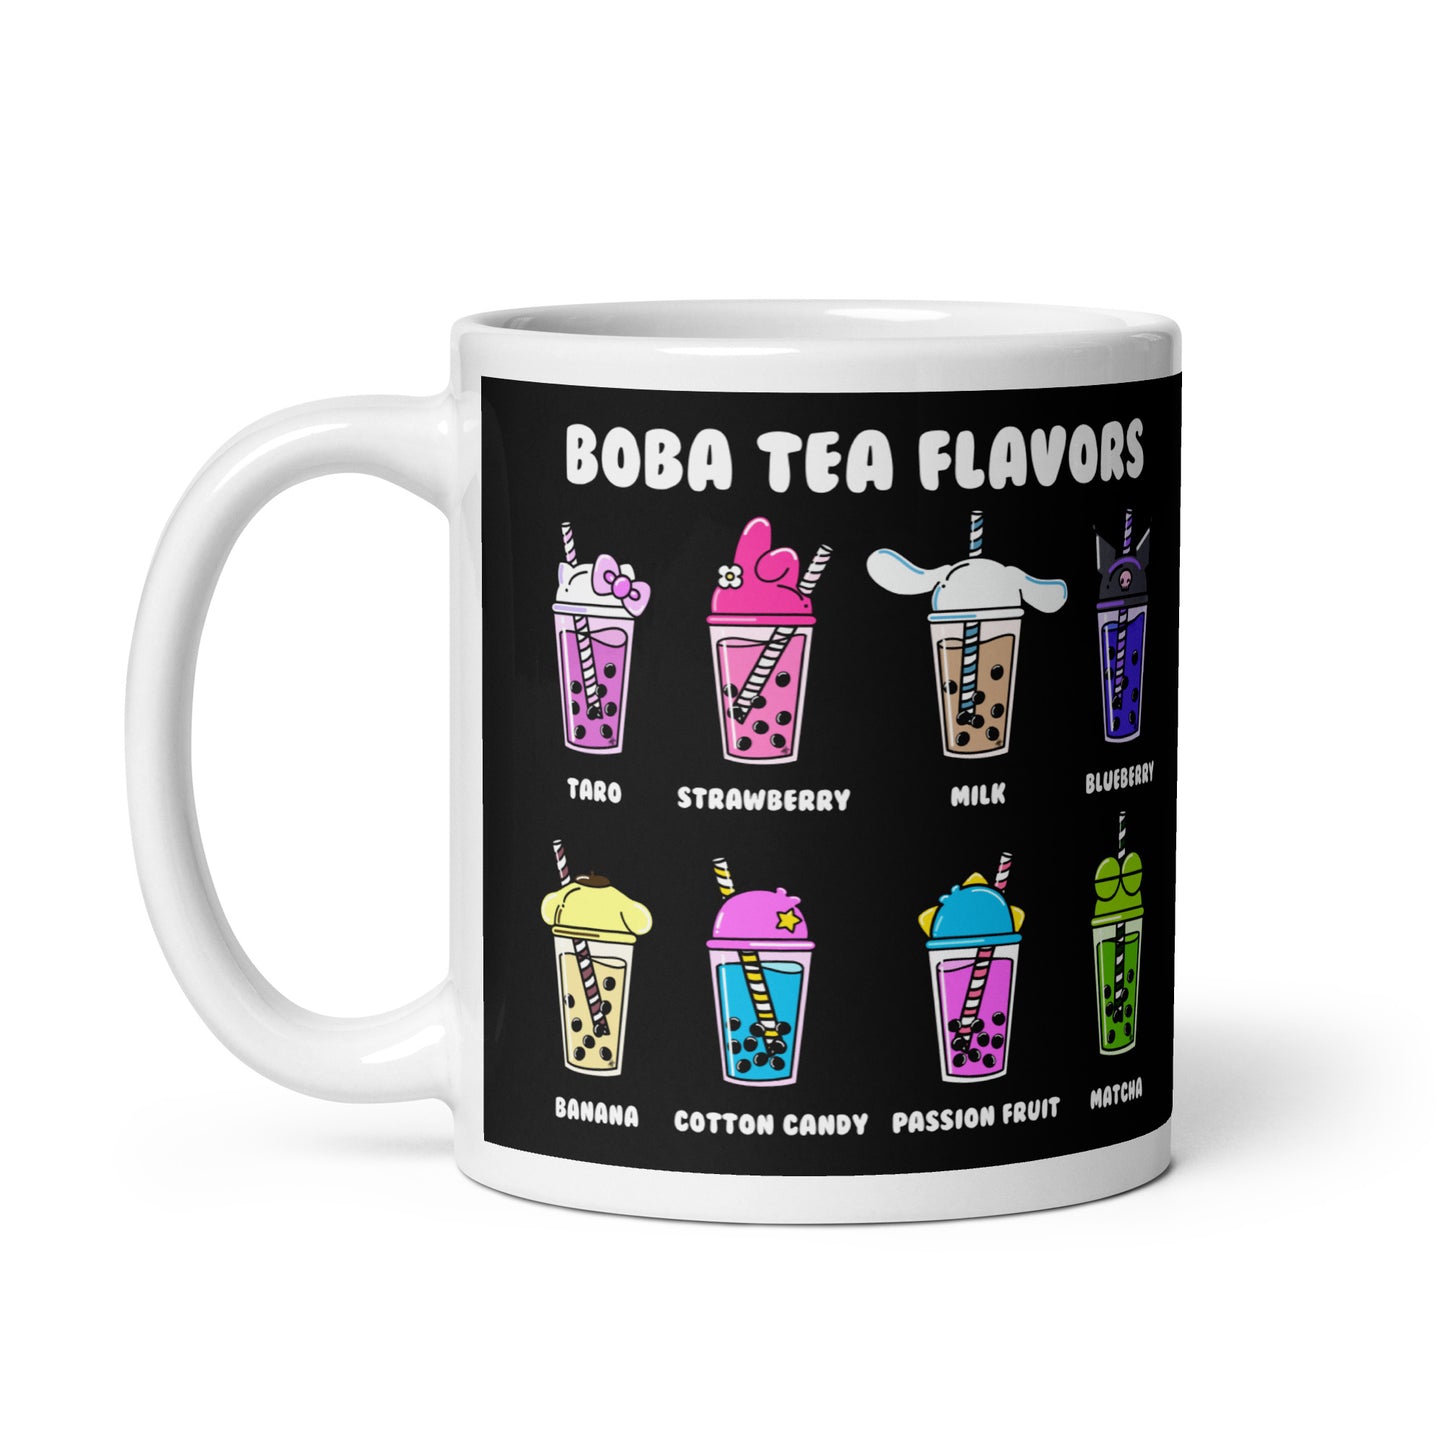 Boba Tea Flavors Mug